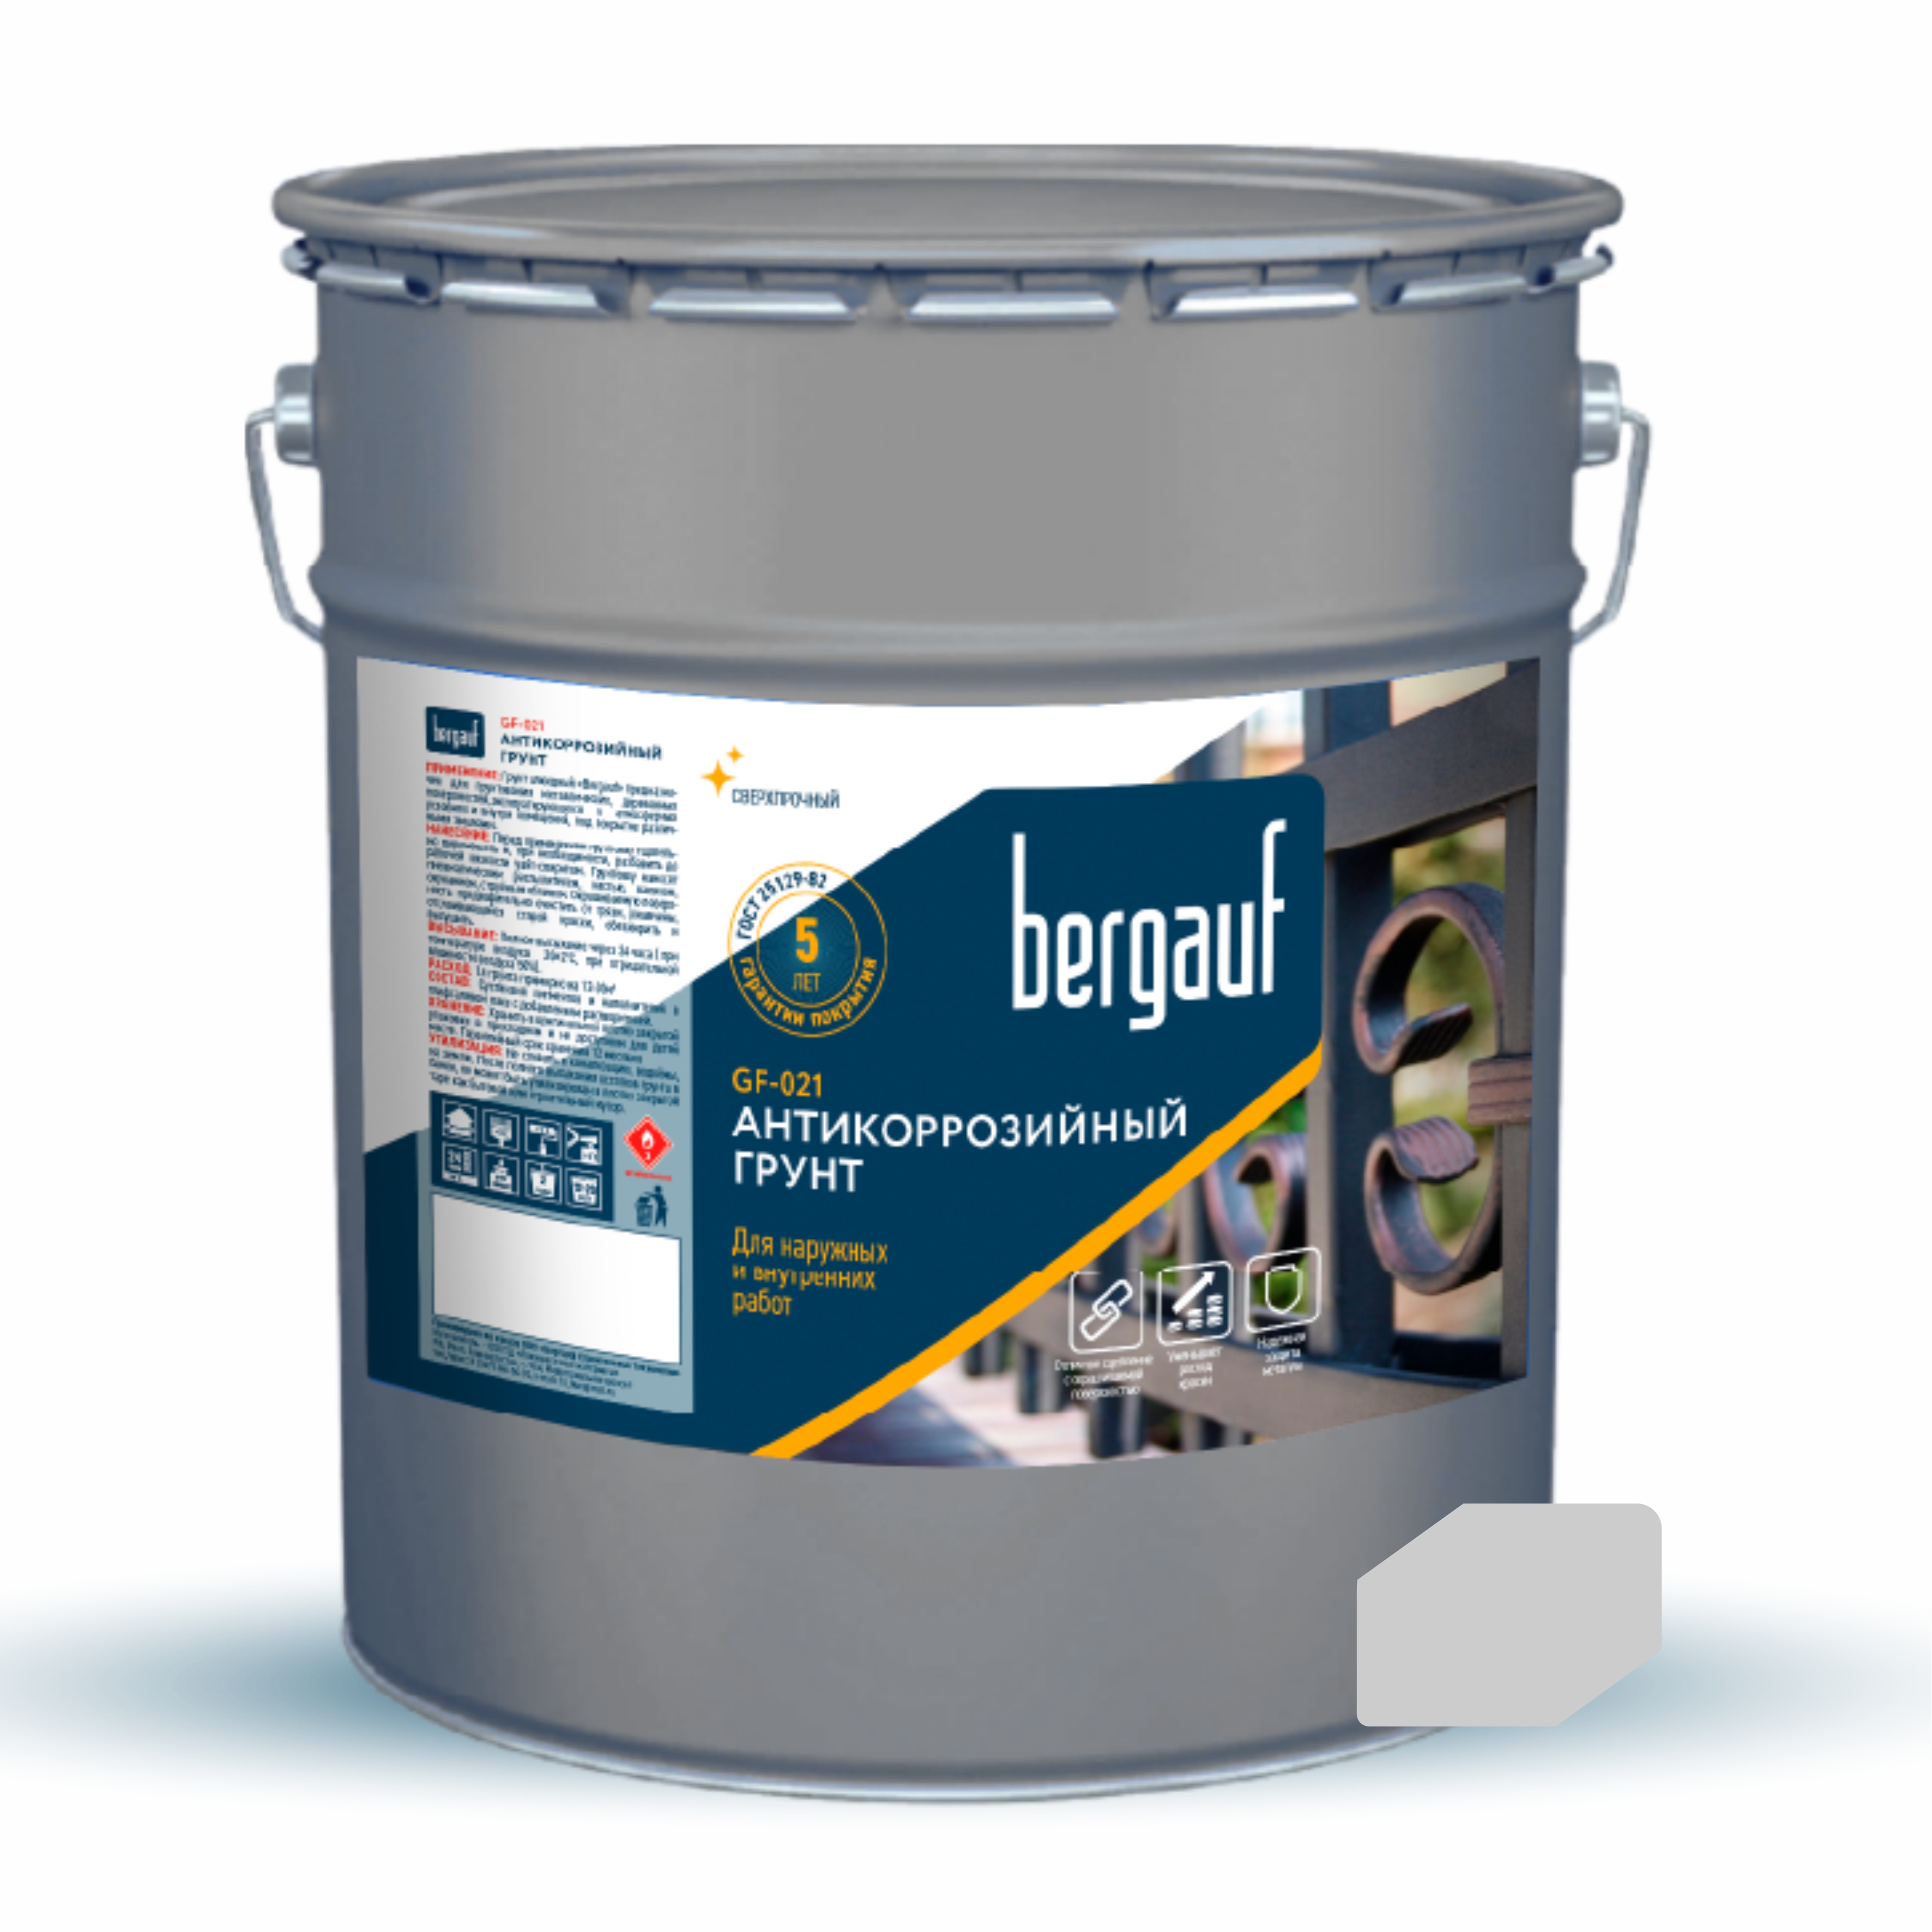 Грунт Bergauf GF-021 антикоррозийный, цвет светло-серый, 6 кг